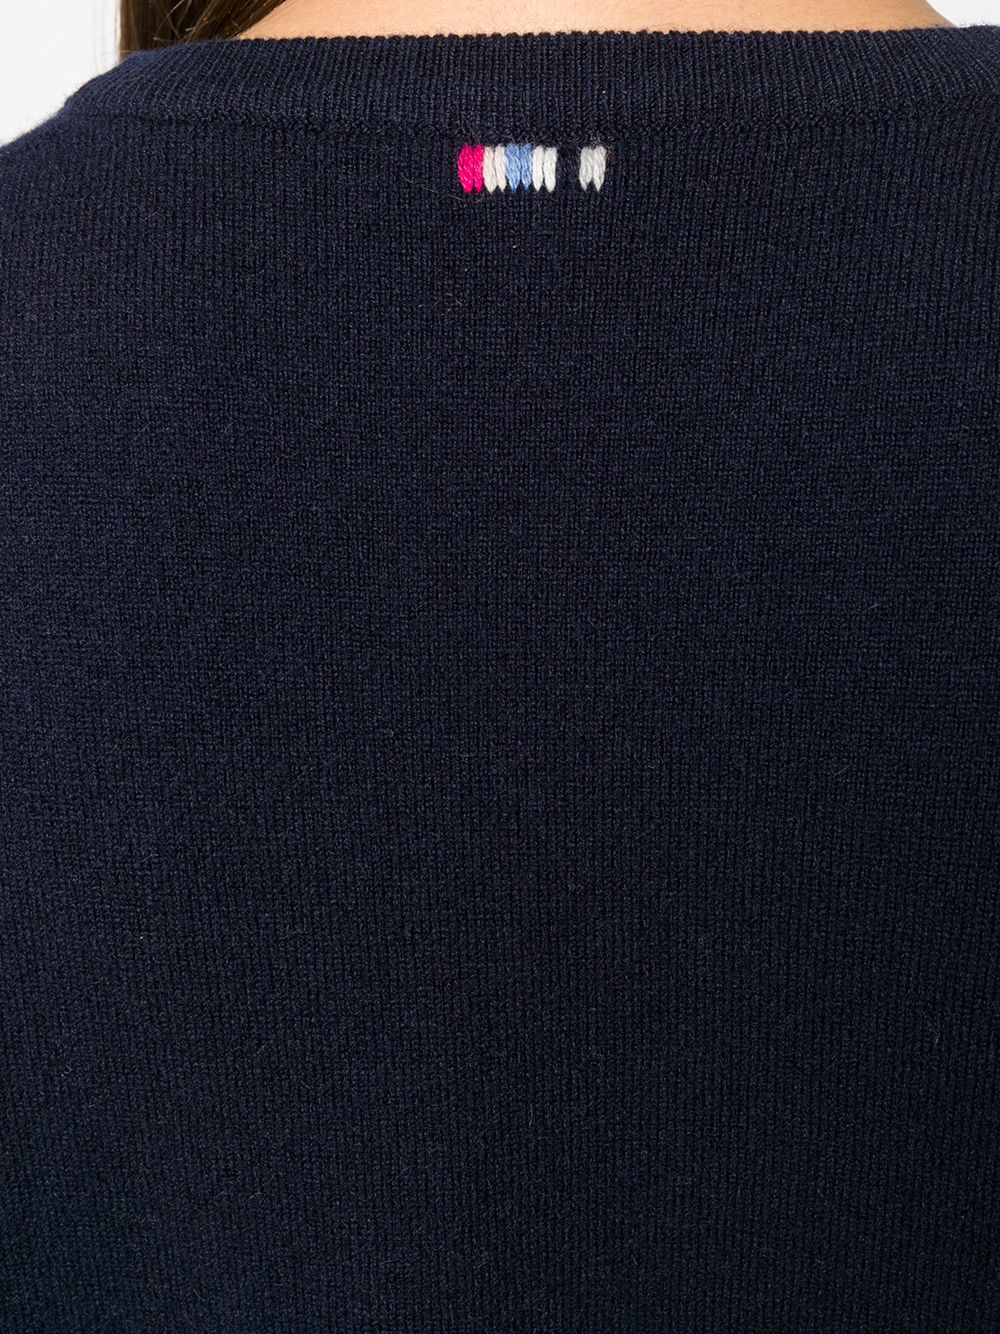 фото Extreme cashmere приталенный свитер с короткими рукавами